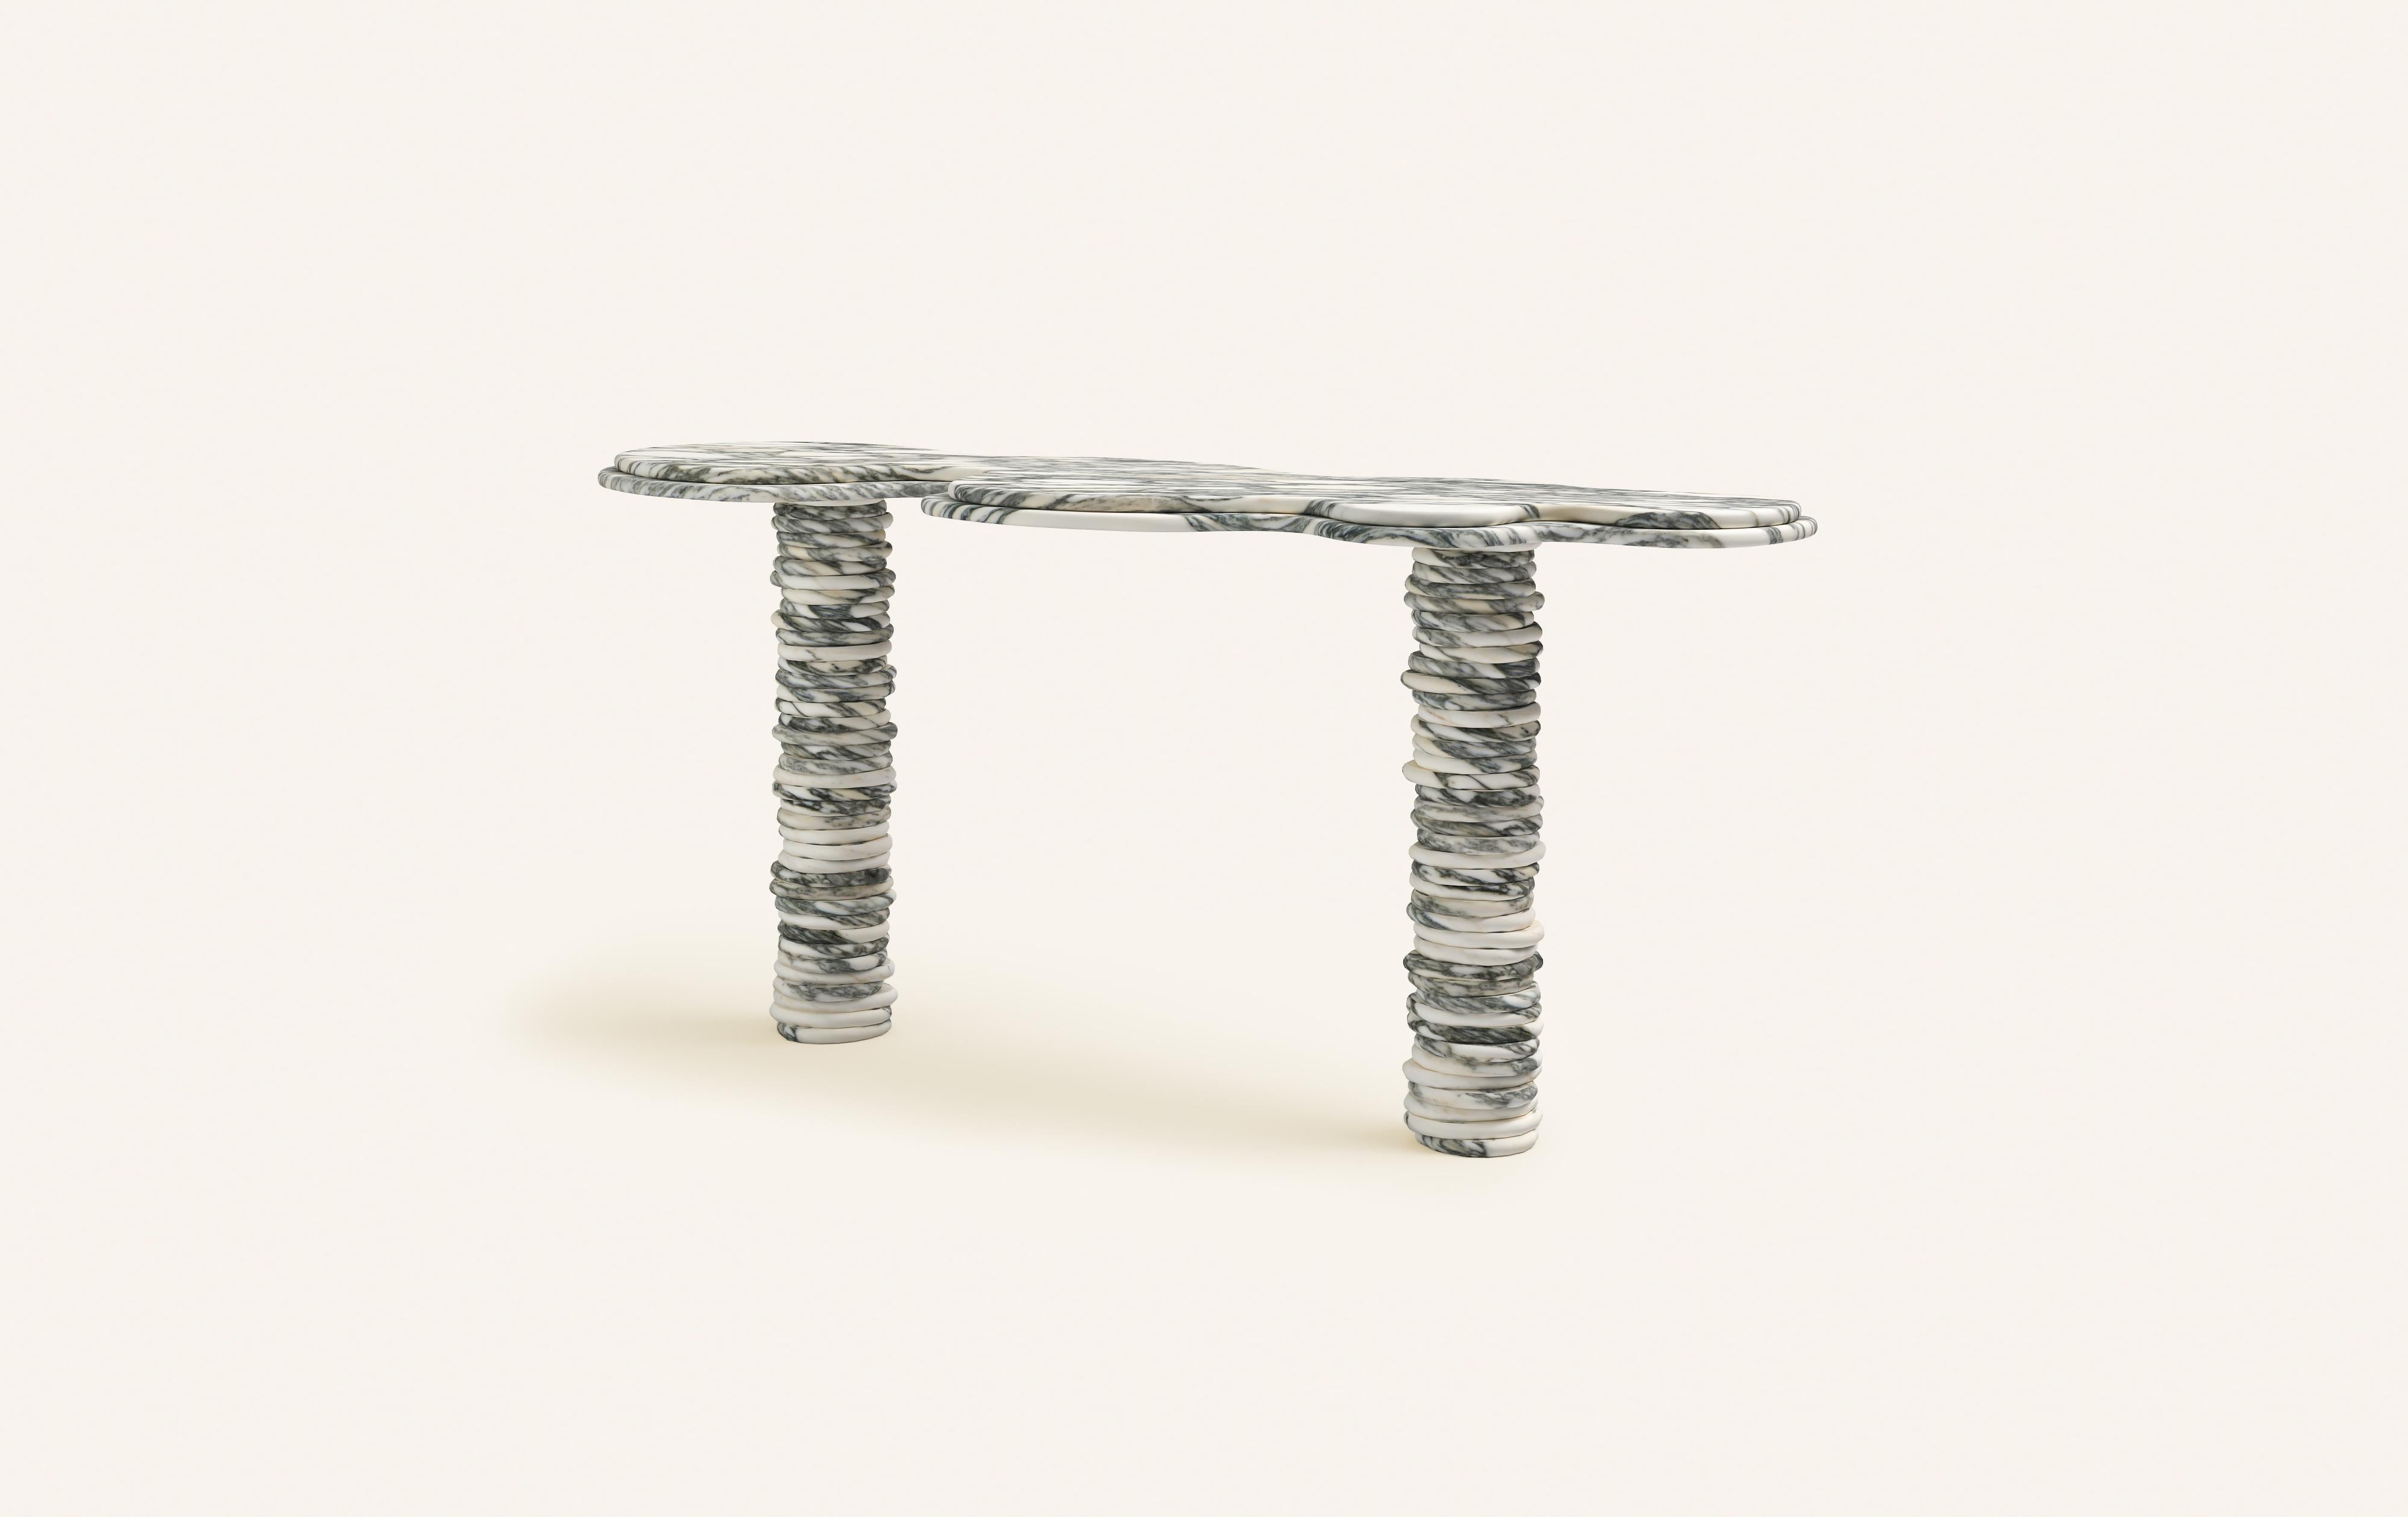 Organic Modern FORM(LA) Onda Console Table 60”L x 18”W x 29”H Arabescato Corchia Marble For Sale